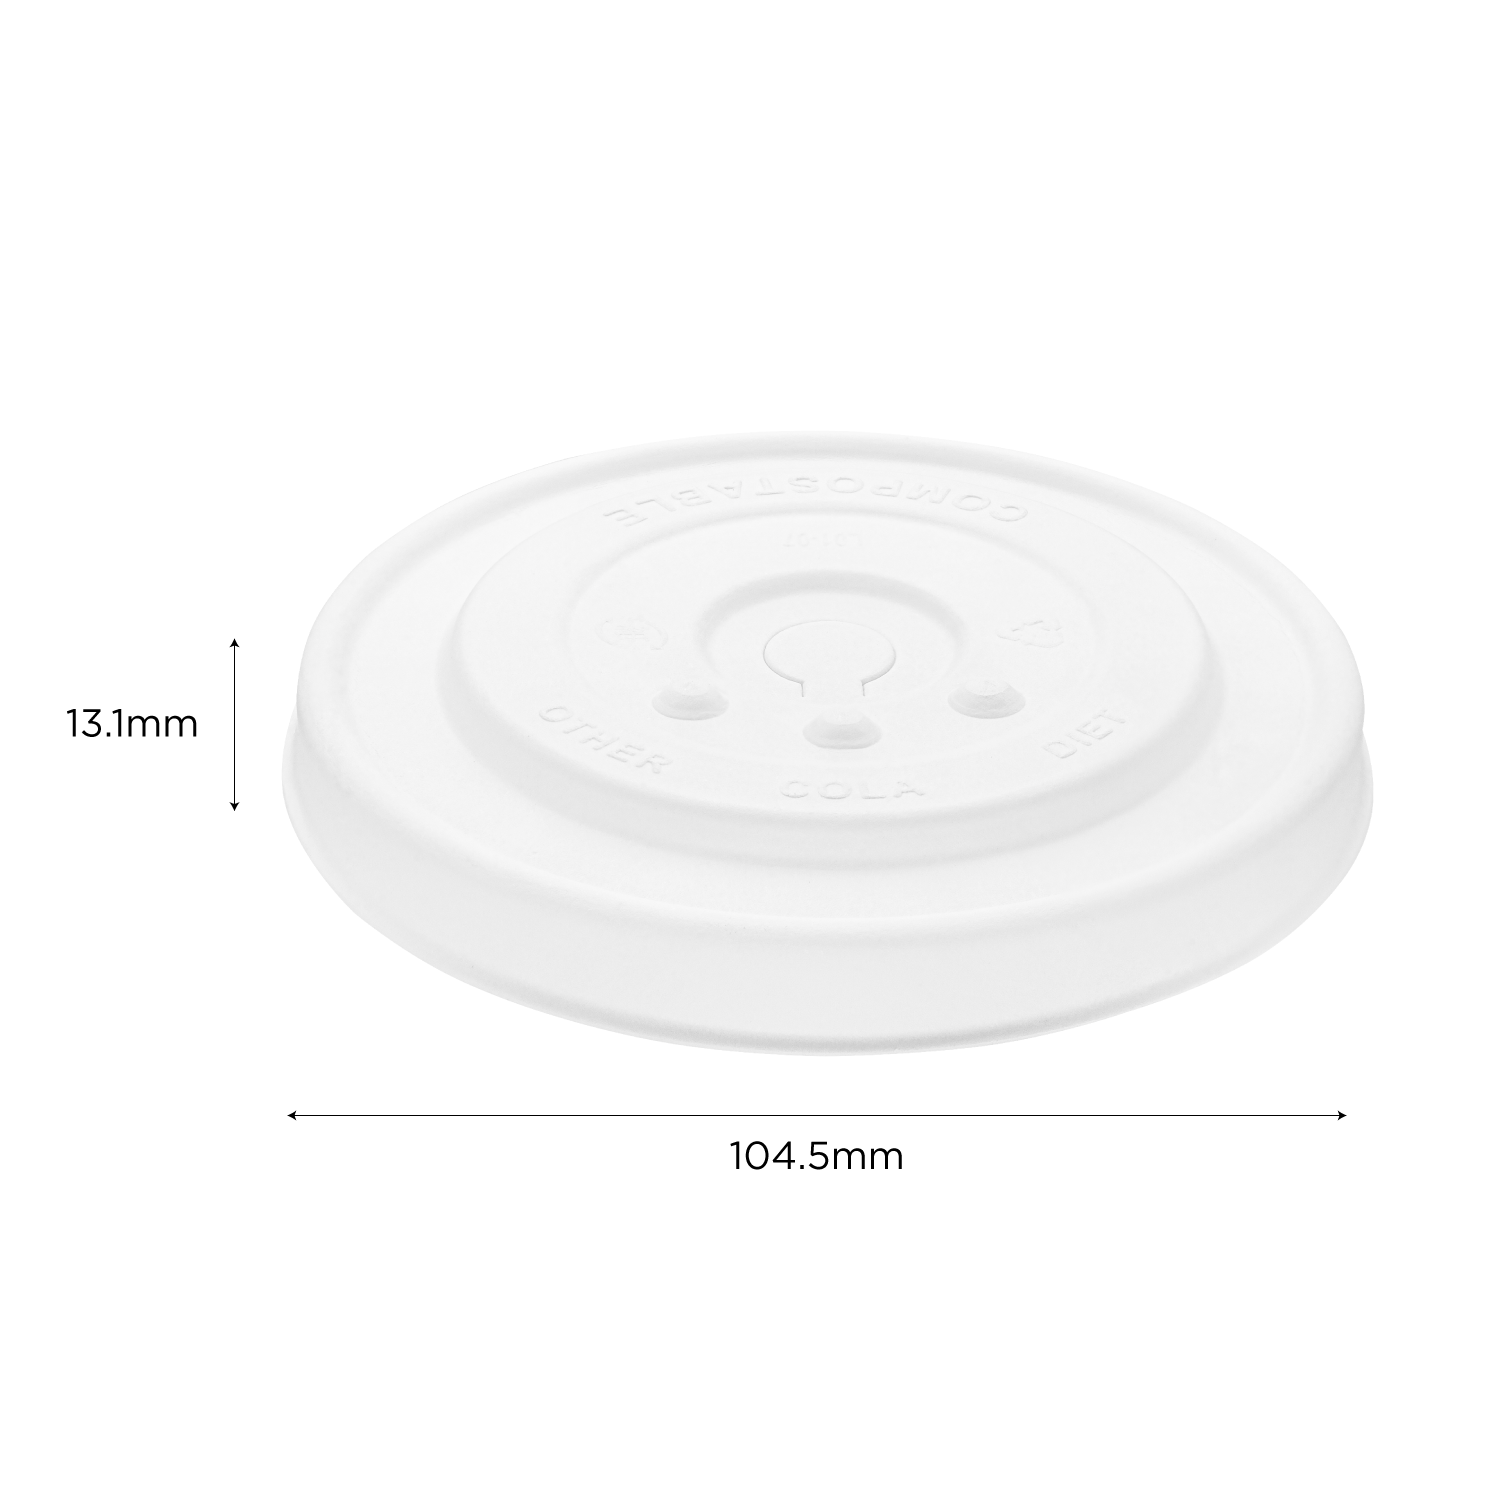 Karat Earth Compostable Fiber Paper Flat lid for 32 oz Paper Cold Cup (104.5mm) - 600 pcs